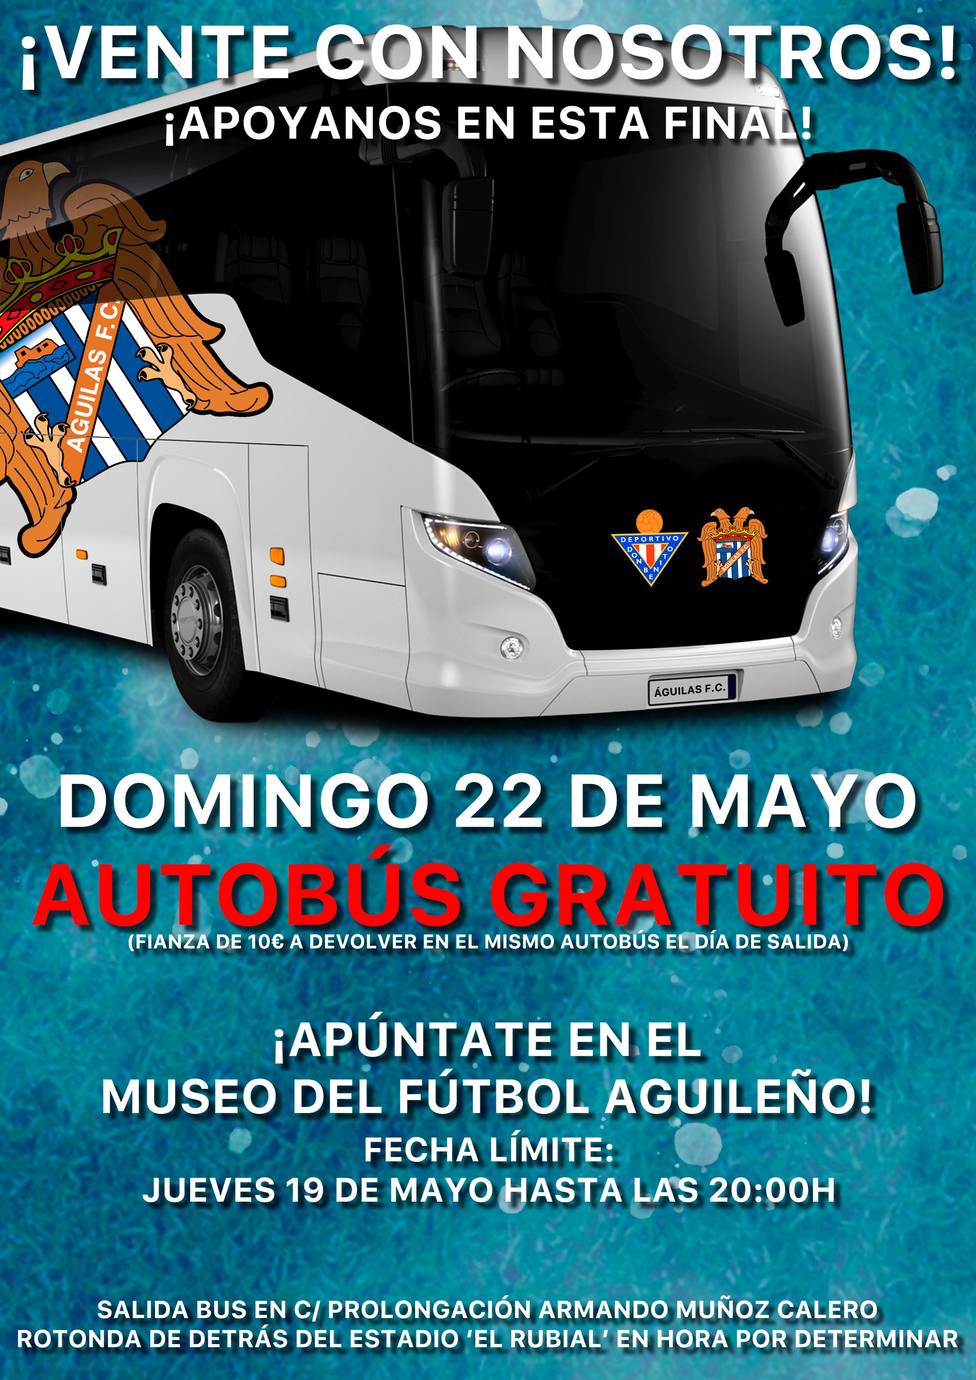 El Águilas FC pone a disposición de sus abonados autobuses para la gran final